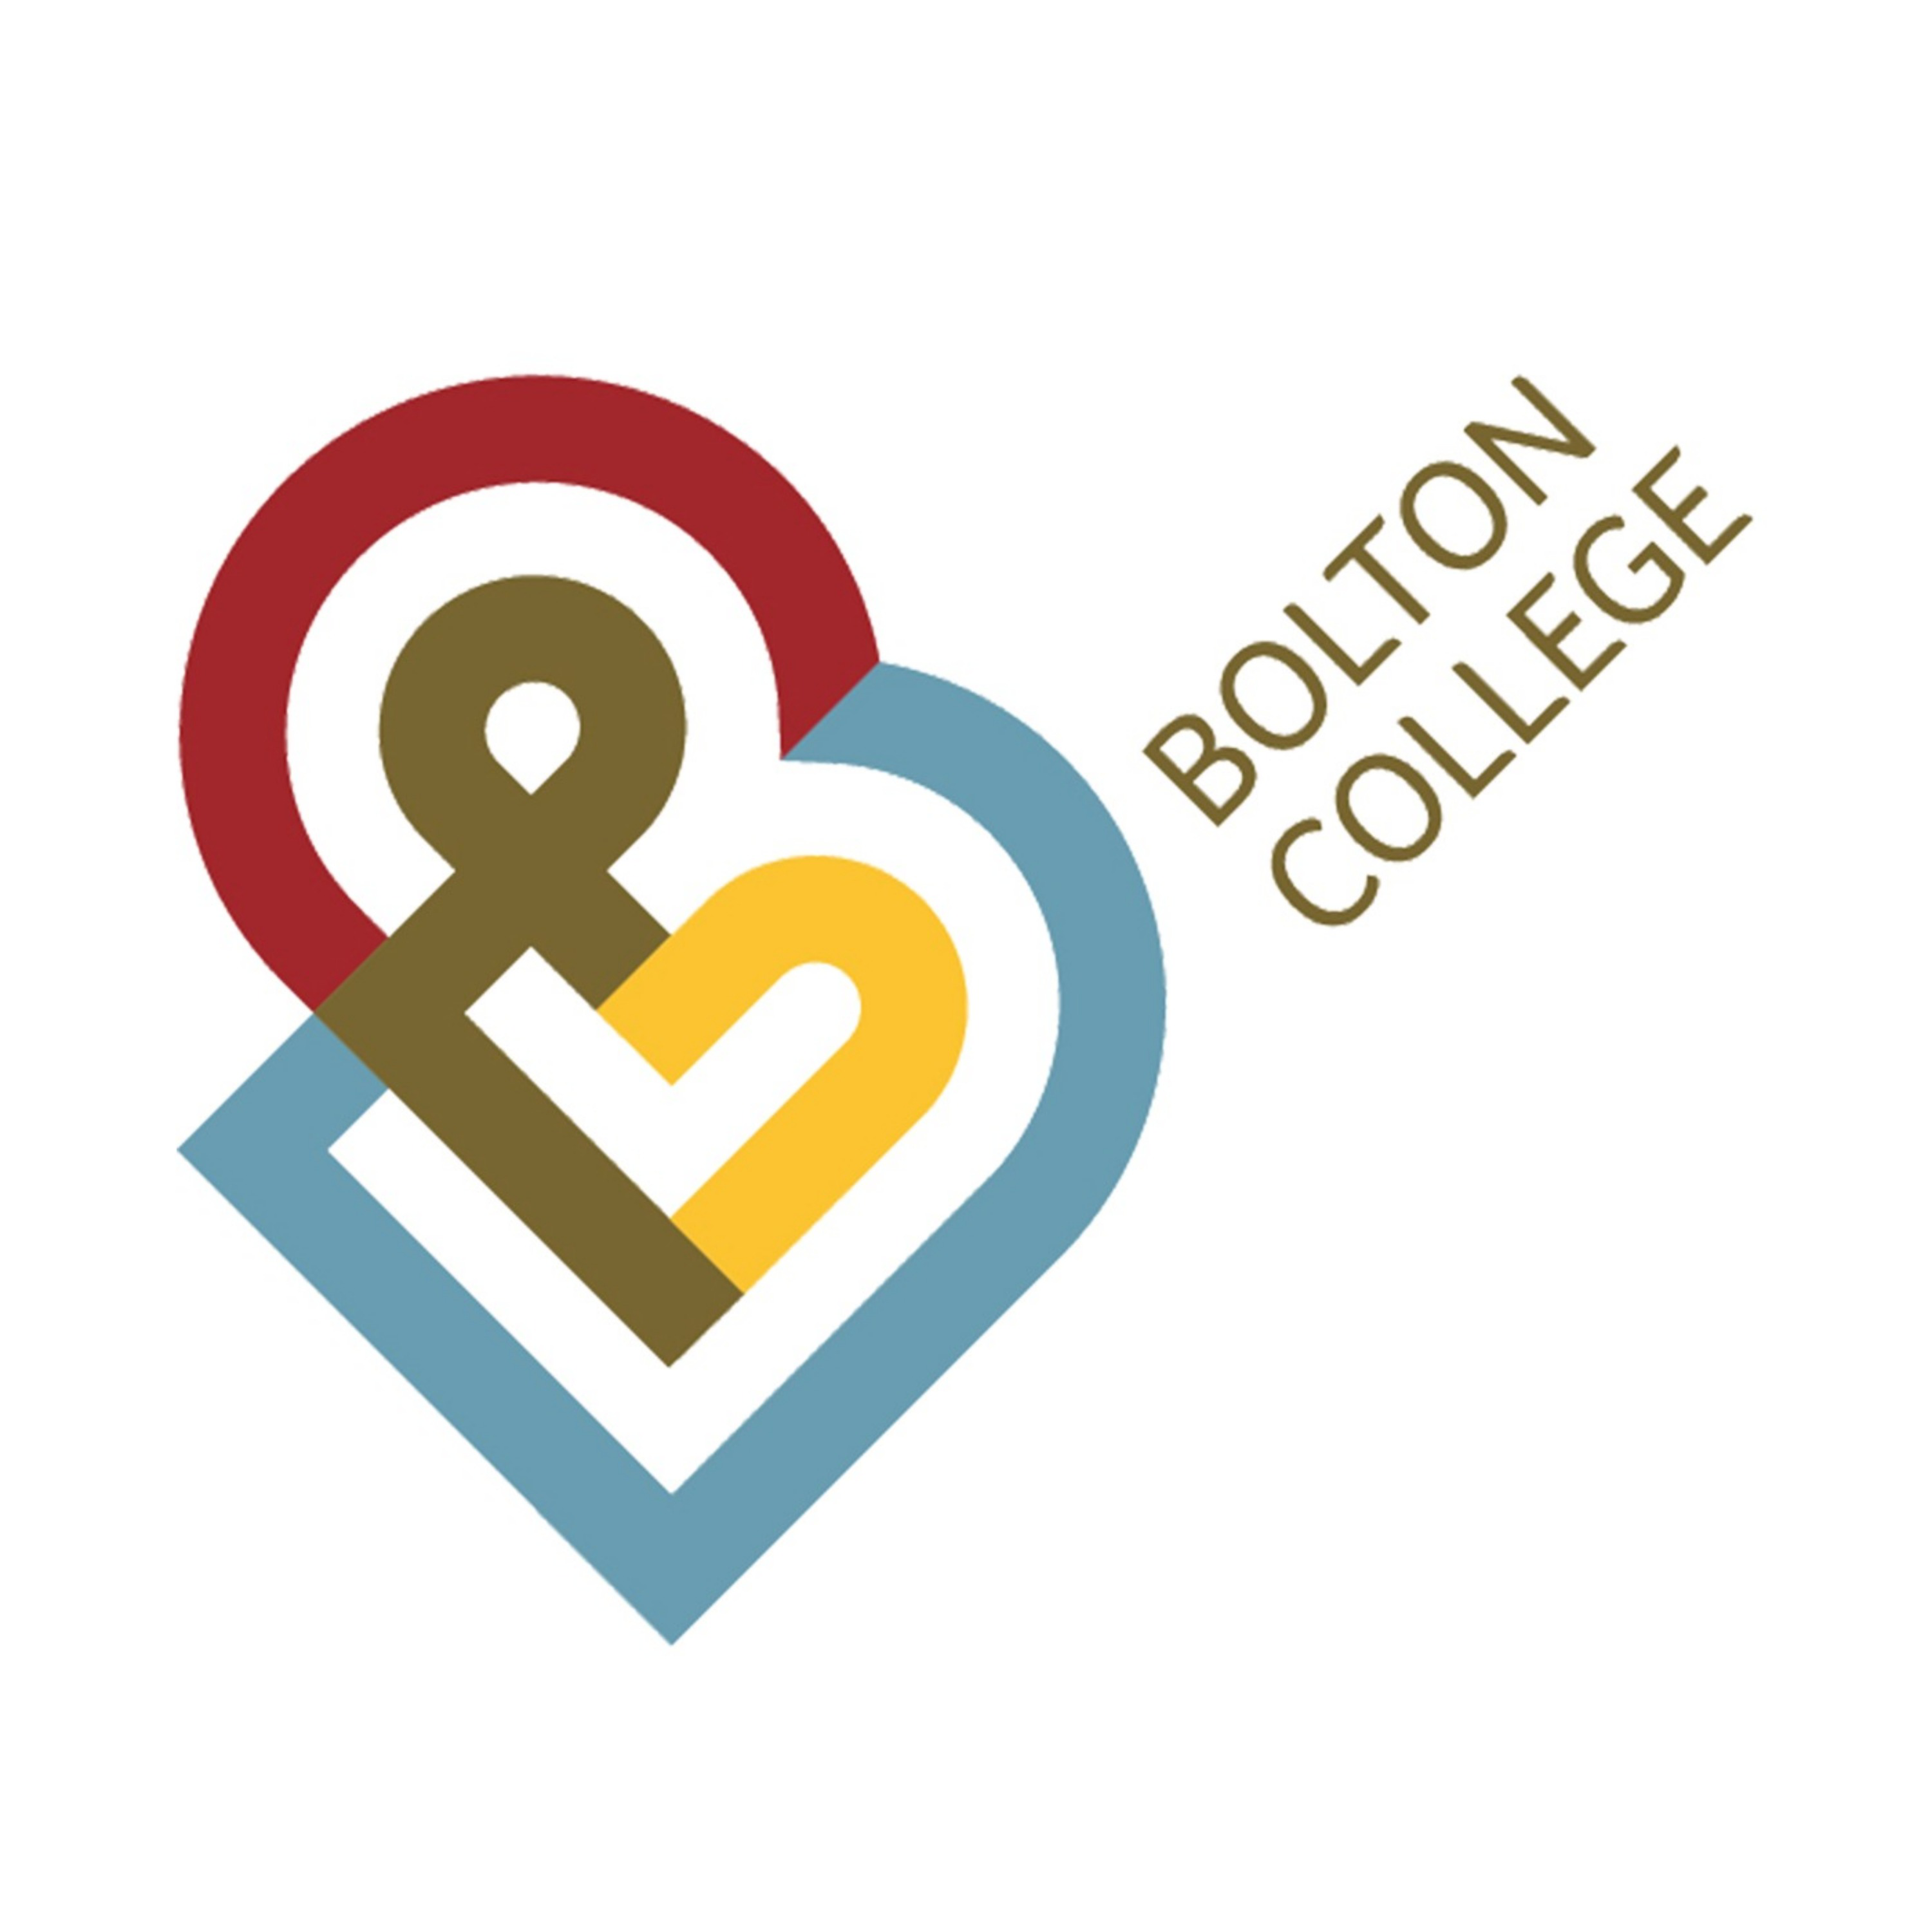 Bolton College | United Kingdom